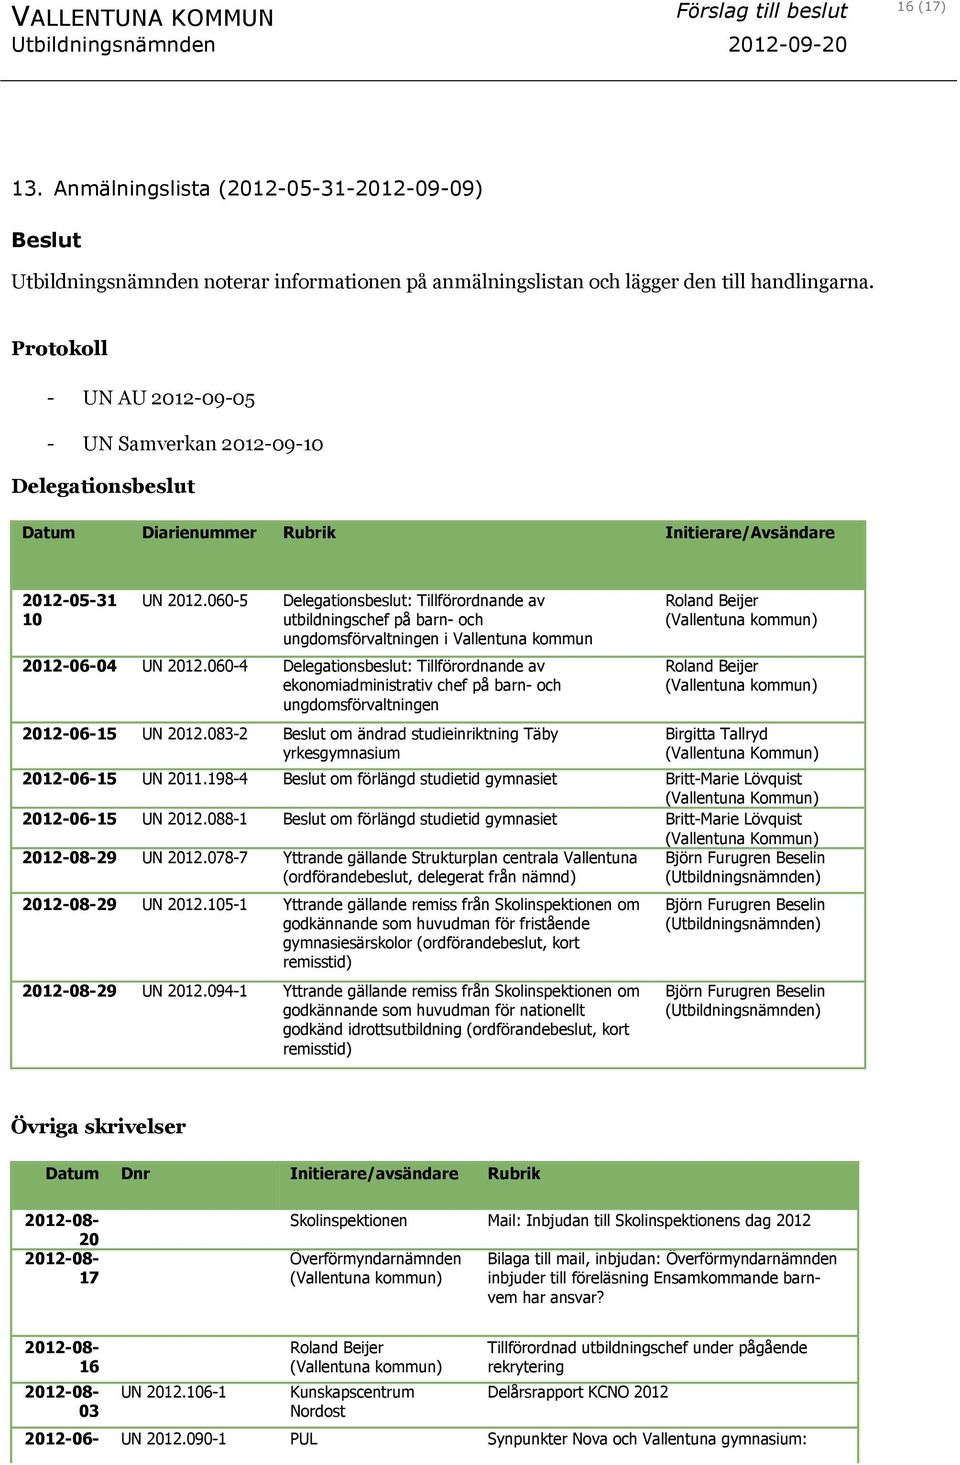 Protokoll - UN AU 2012-09-05 - UN Samverkan 2012-09-10 Delegationsbeslut Datum Diarienummer Rubrik Initierare/Avsändare 2012-05-31 10 UN 2012.